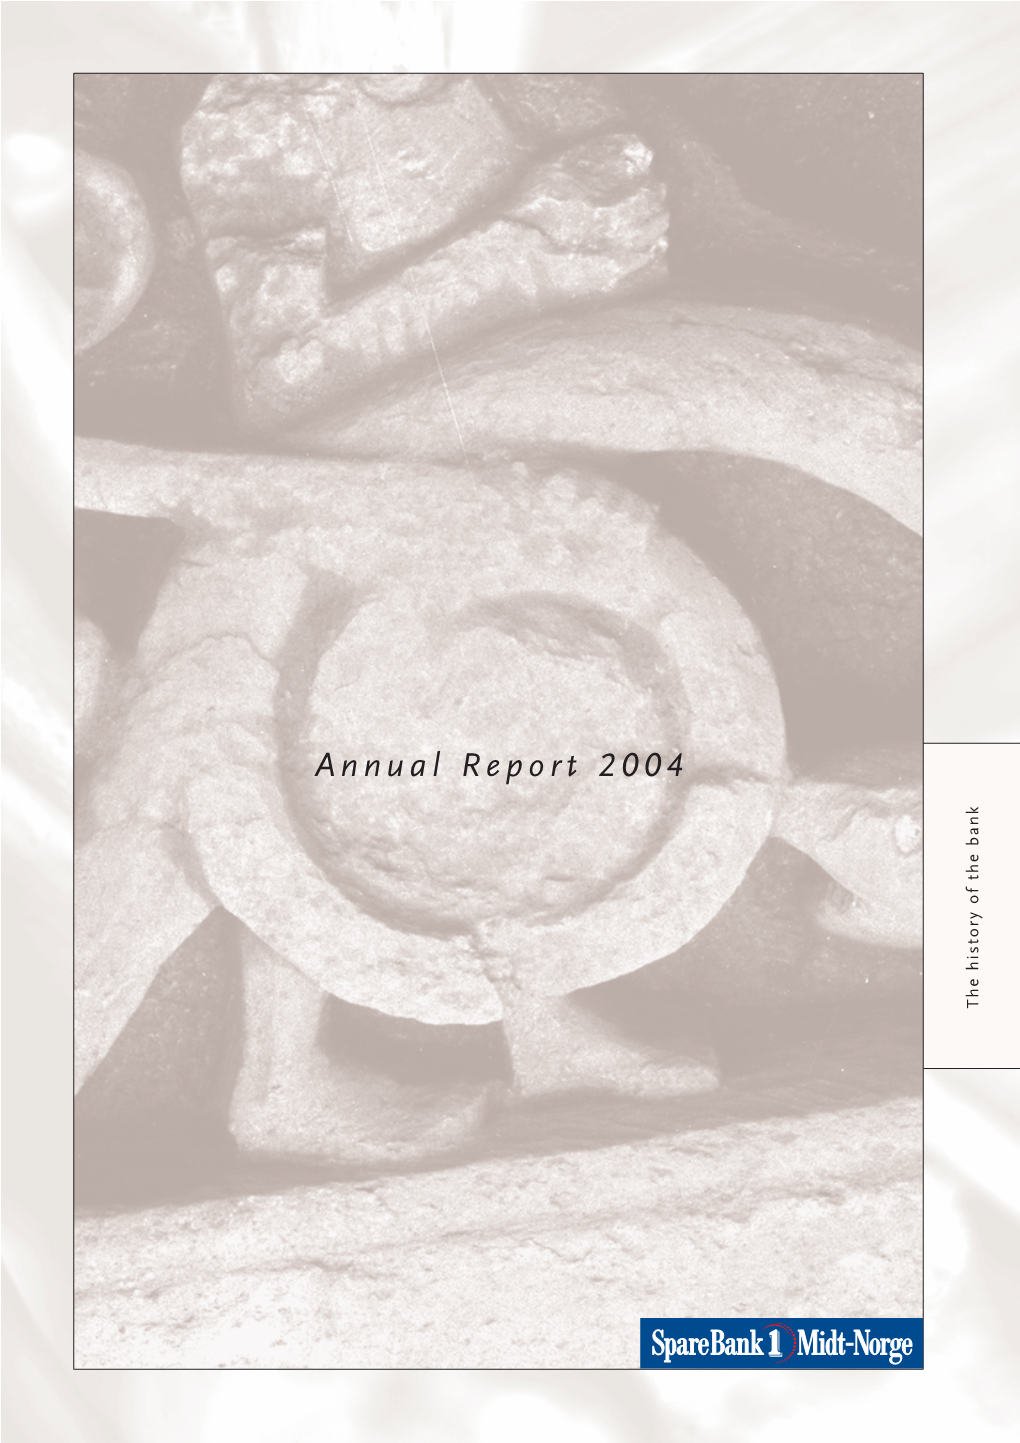 Annual Report 2004 BENNETT Ht:Ctrn Ile Ae/Ogi Ehu.Print: Trykkpartner AS